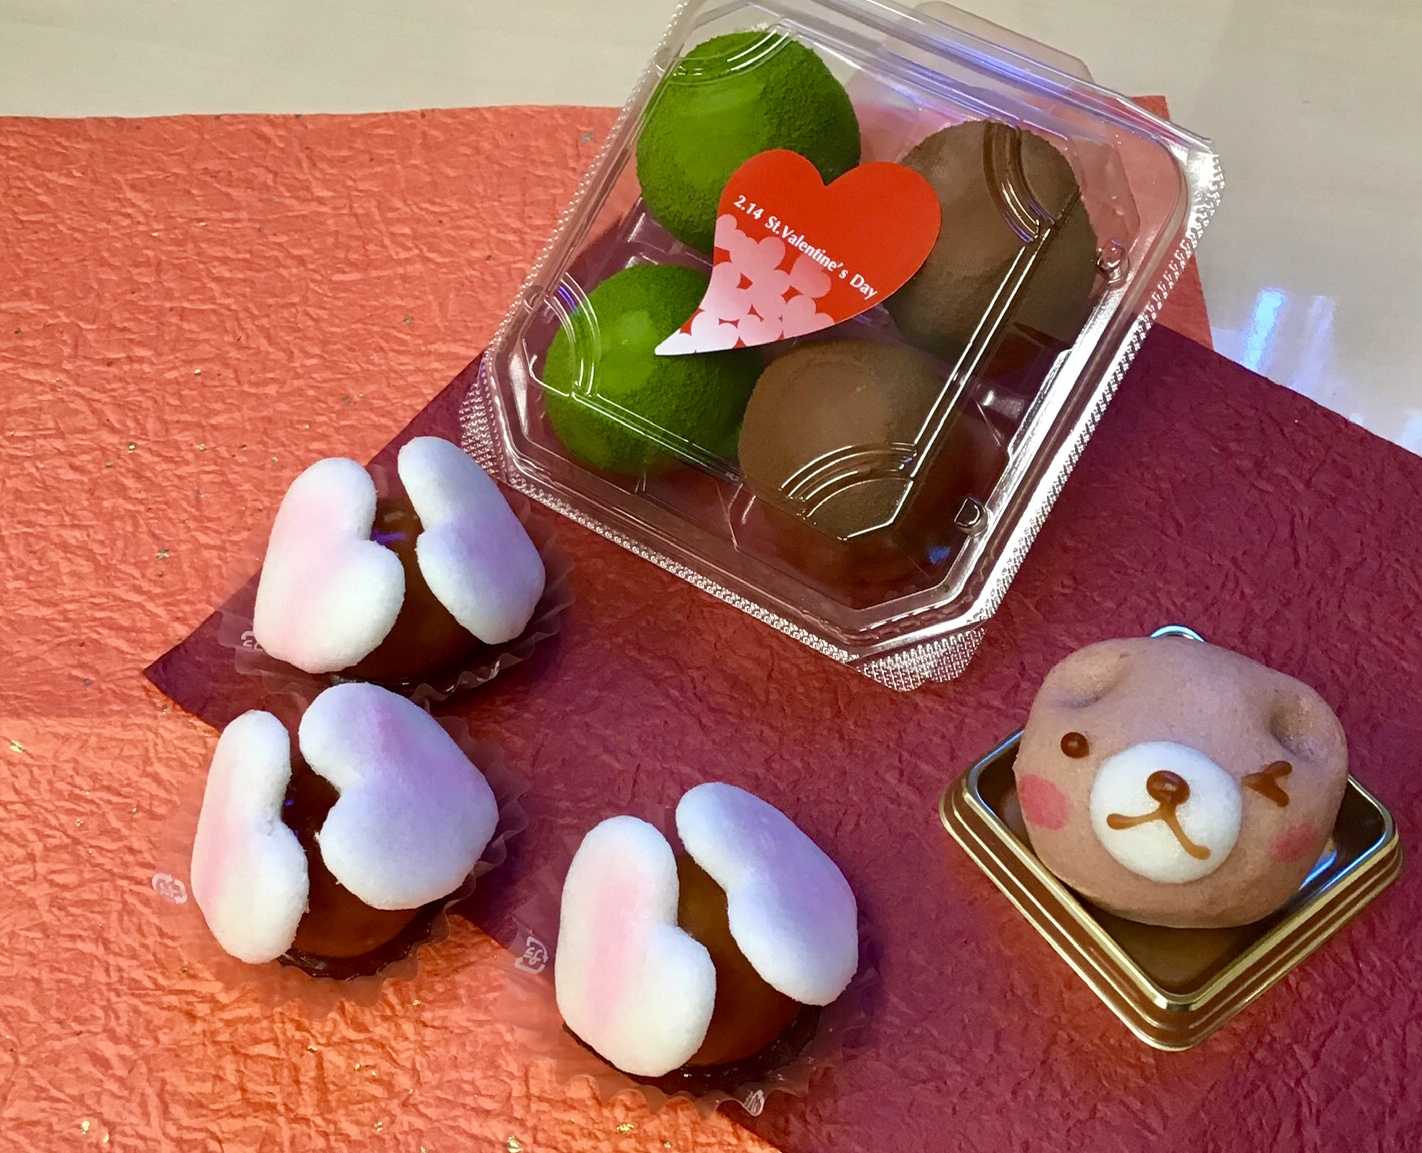 菓子処 喜久春 2月14日はバレンタインデー 生チョコ餅おいしいですよー